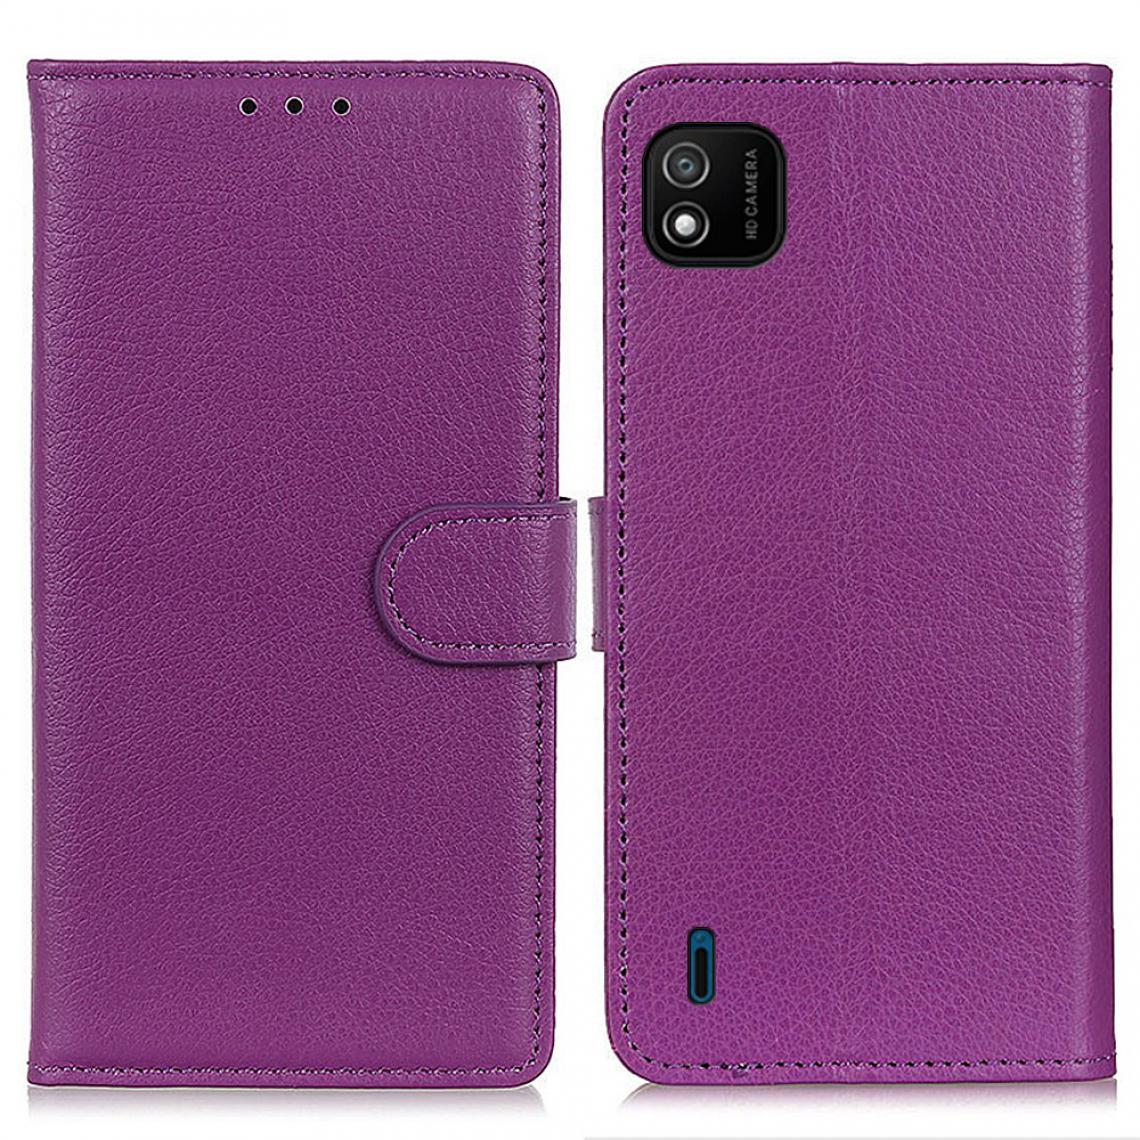 Other - Etui en PU Conception de texture de litchi de style classique avec support violet pour votre WIKO Y62 - Coque, étui smartphone